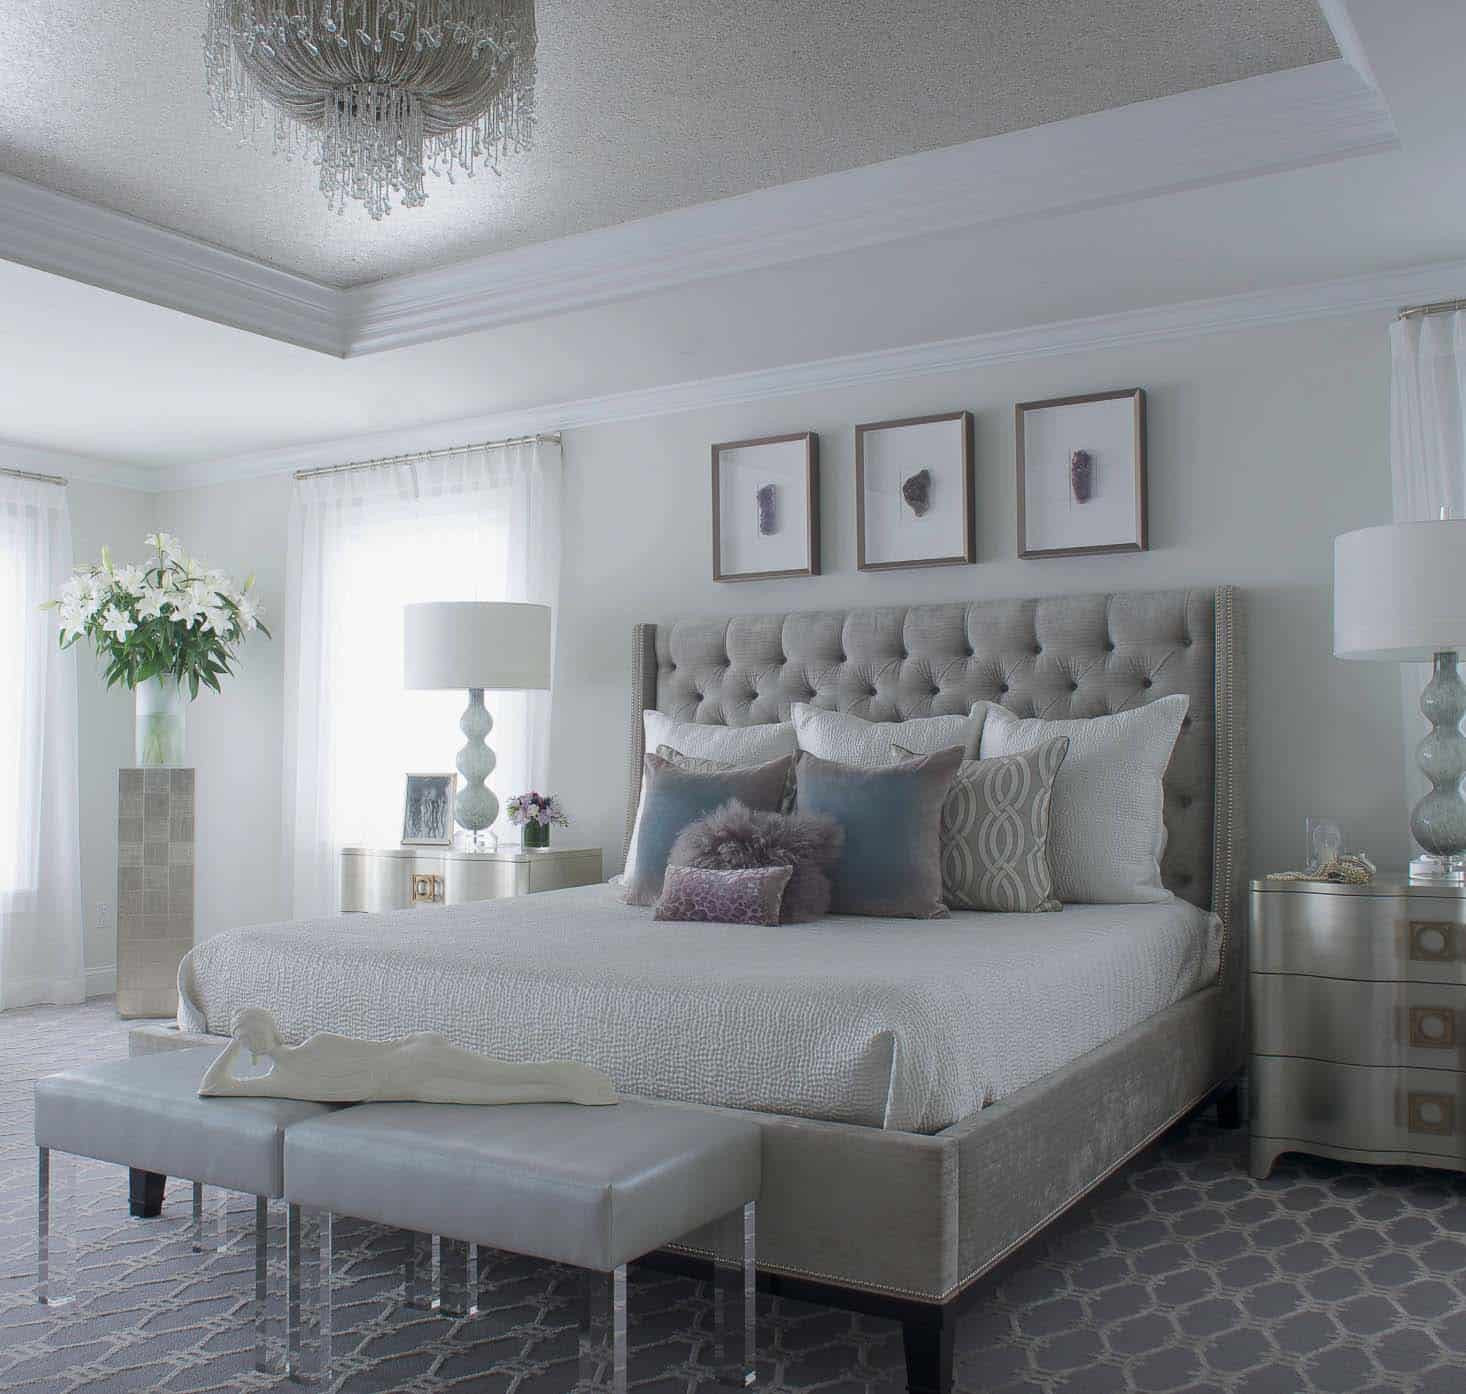 Elegant Bedspreads Master Bedroom
 20 Serene And Elegant Master Bedroom Decorating Ideas